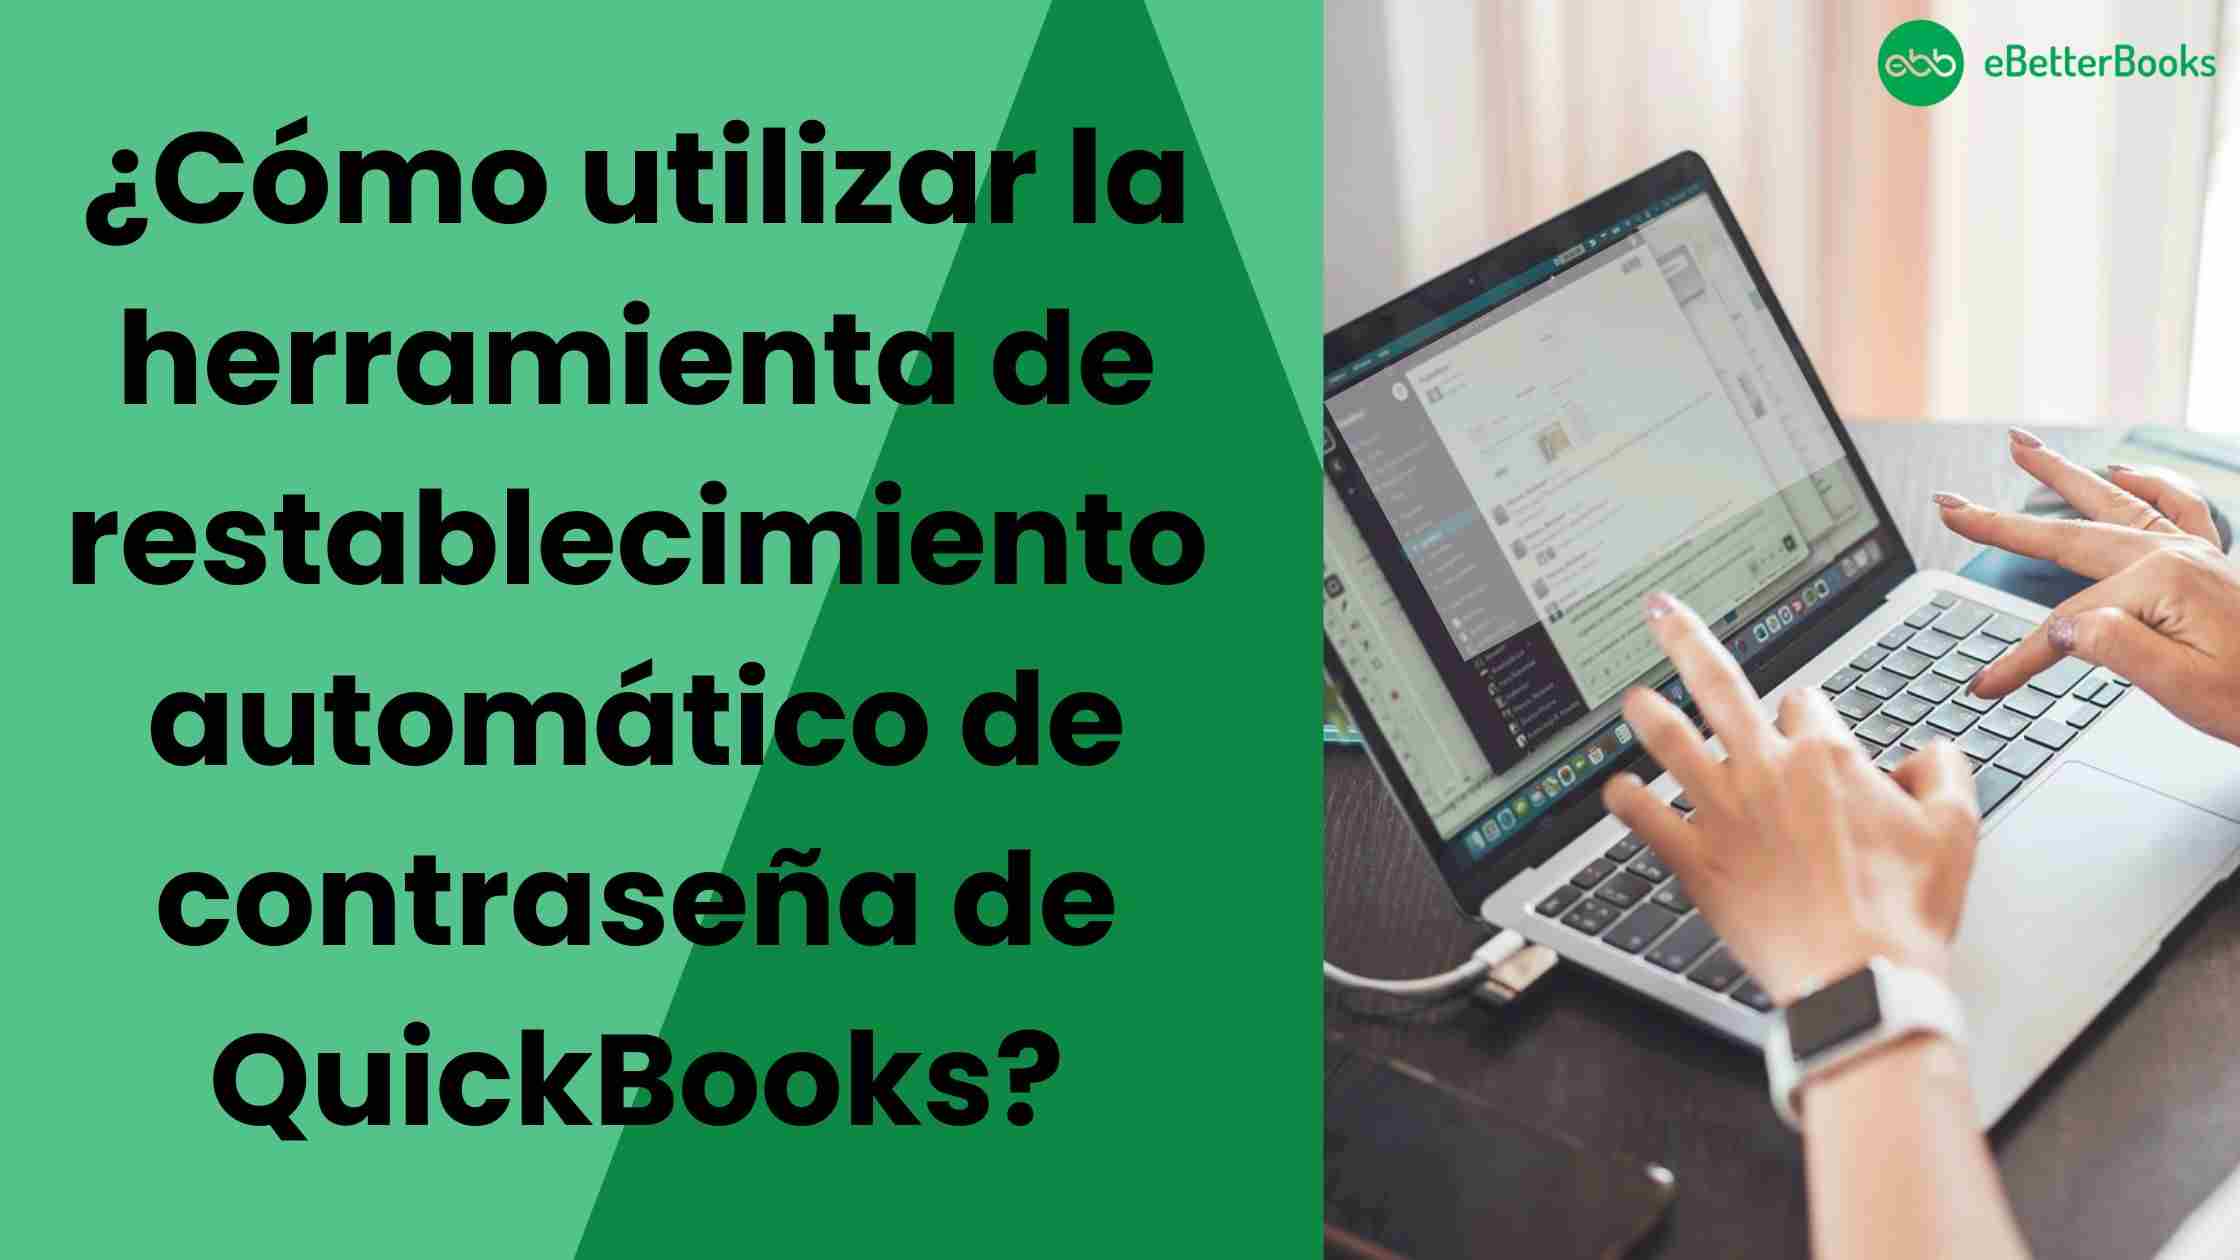 ¿Como-utilizar-la-herramienta-de-restablecimiento-automatico-de-contrasena-de-QuickBooks?